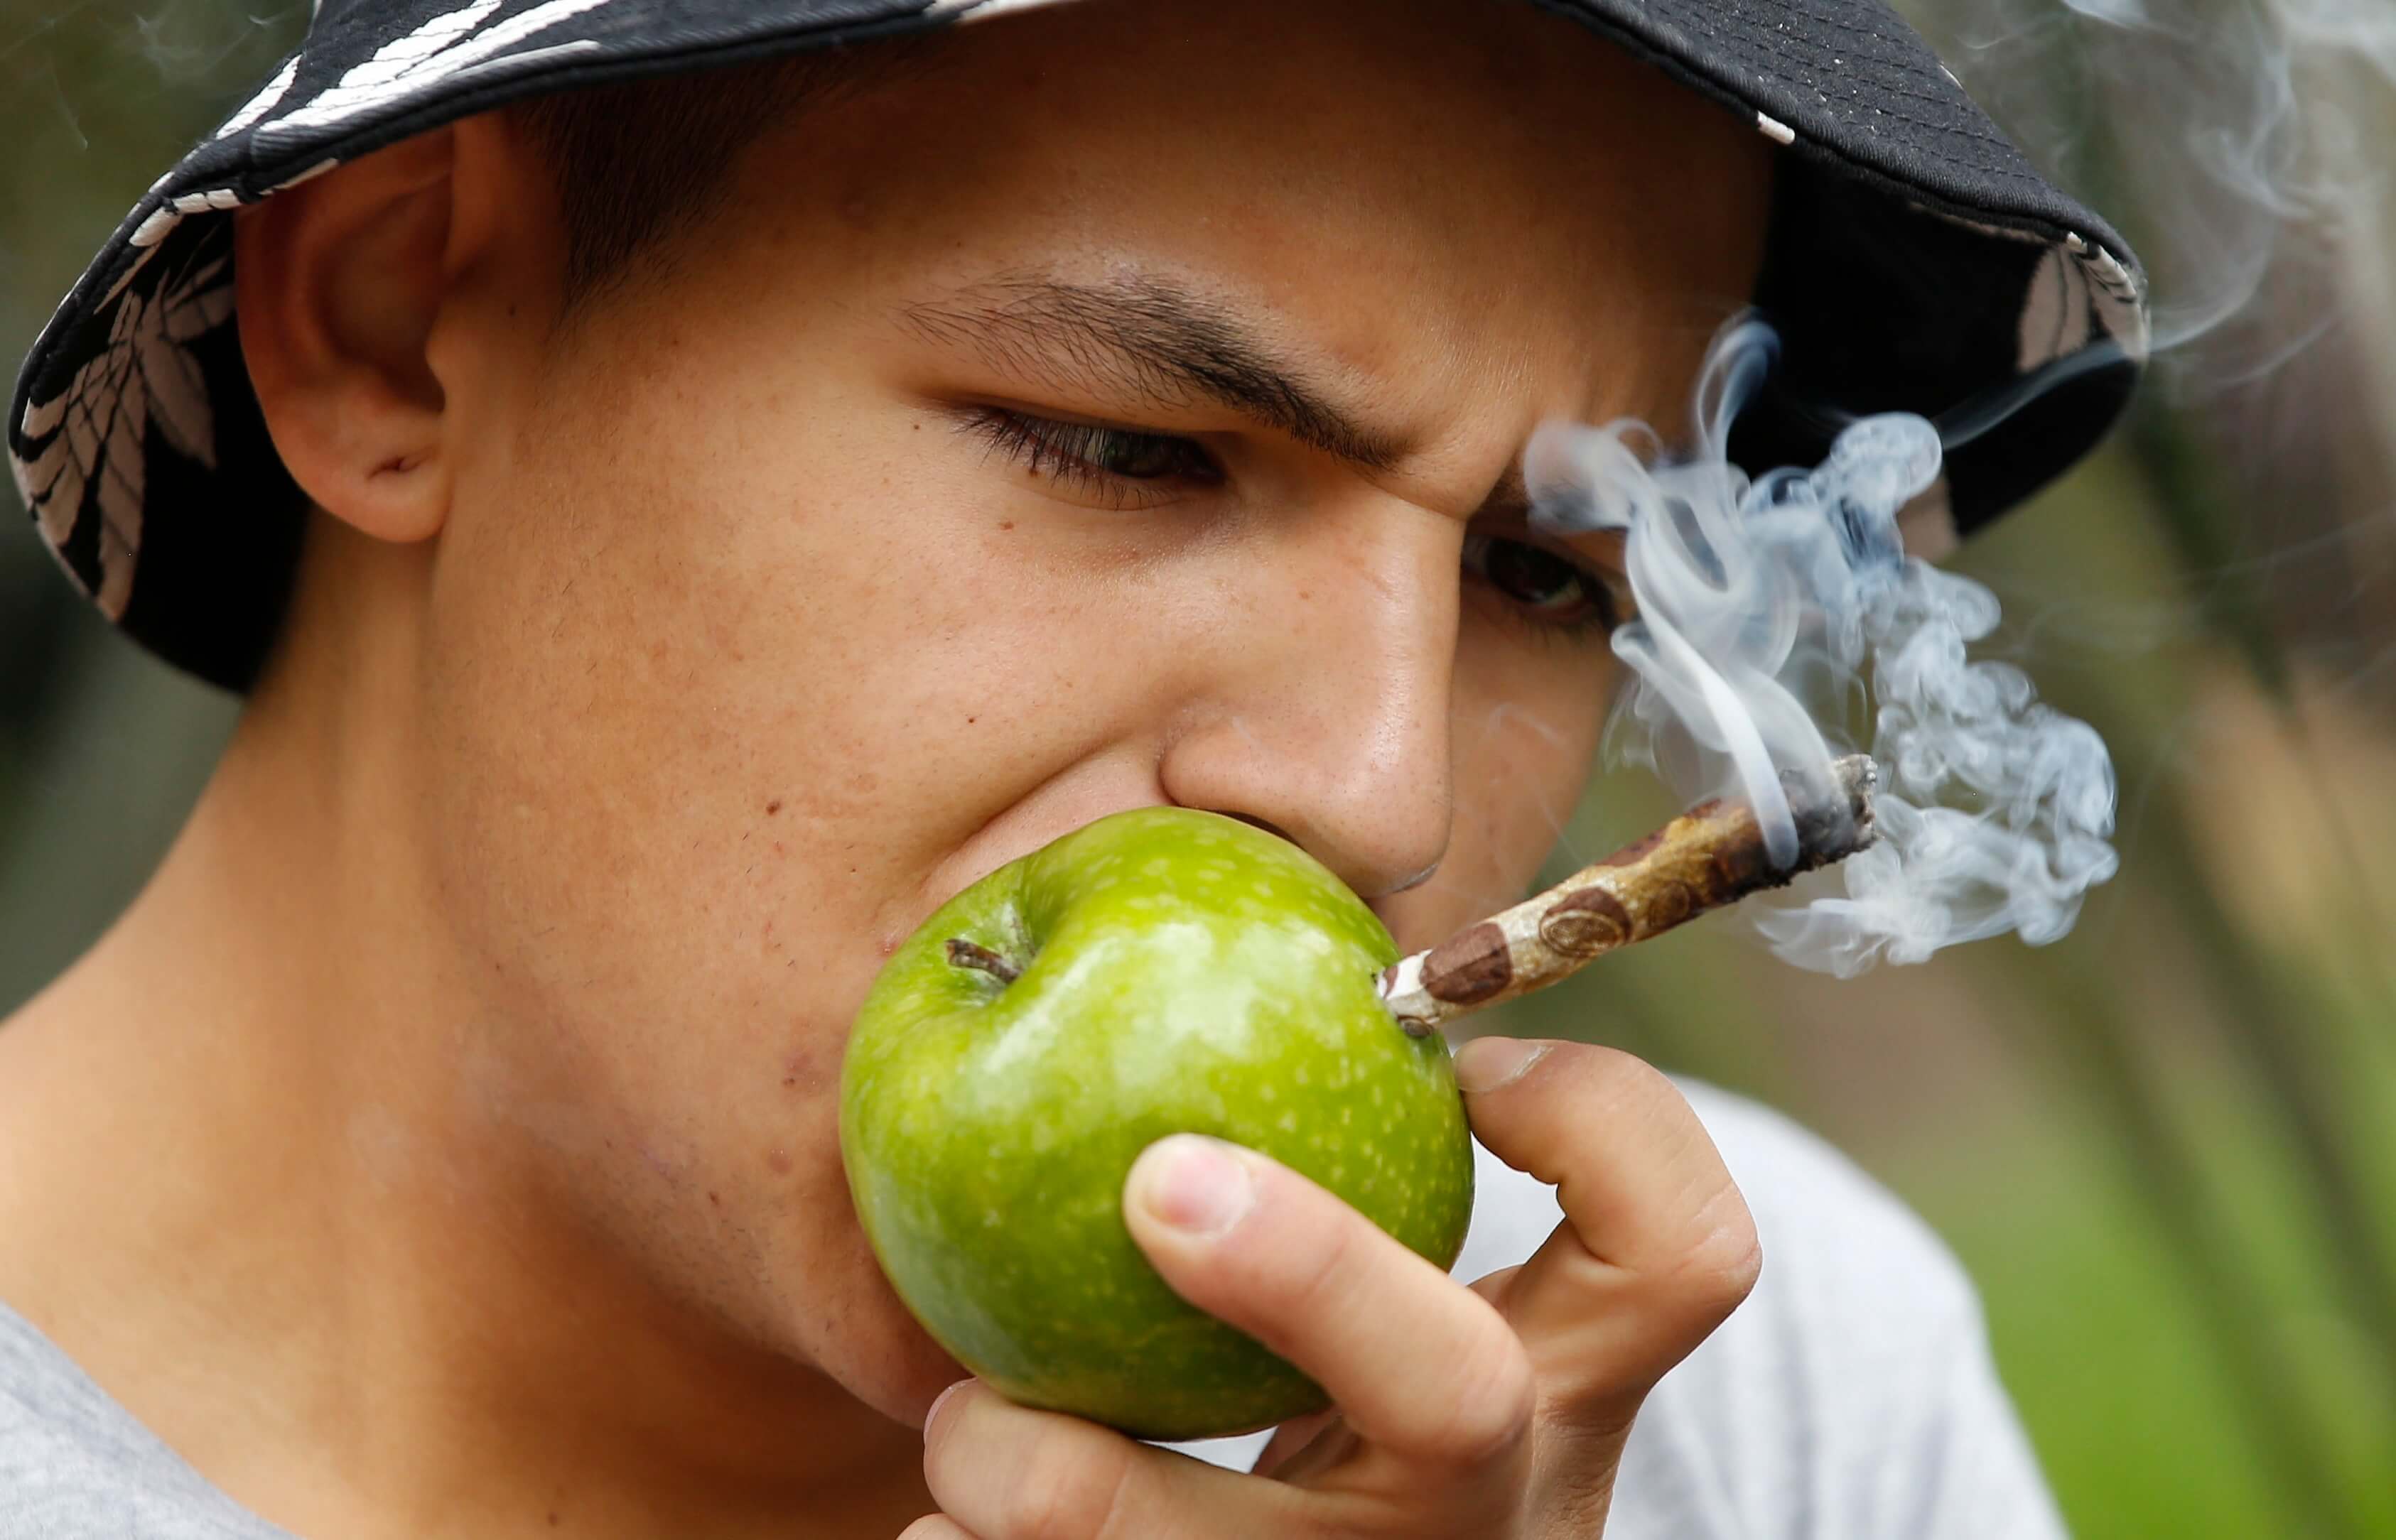 Jóvenes capitalinos perciben un menor riesgo en el consumo de drogas